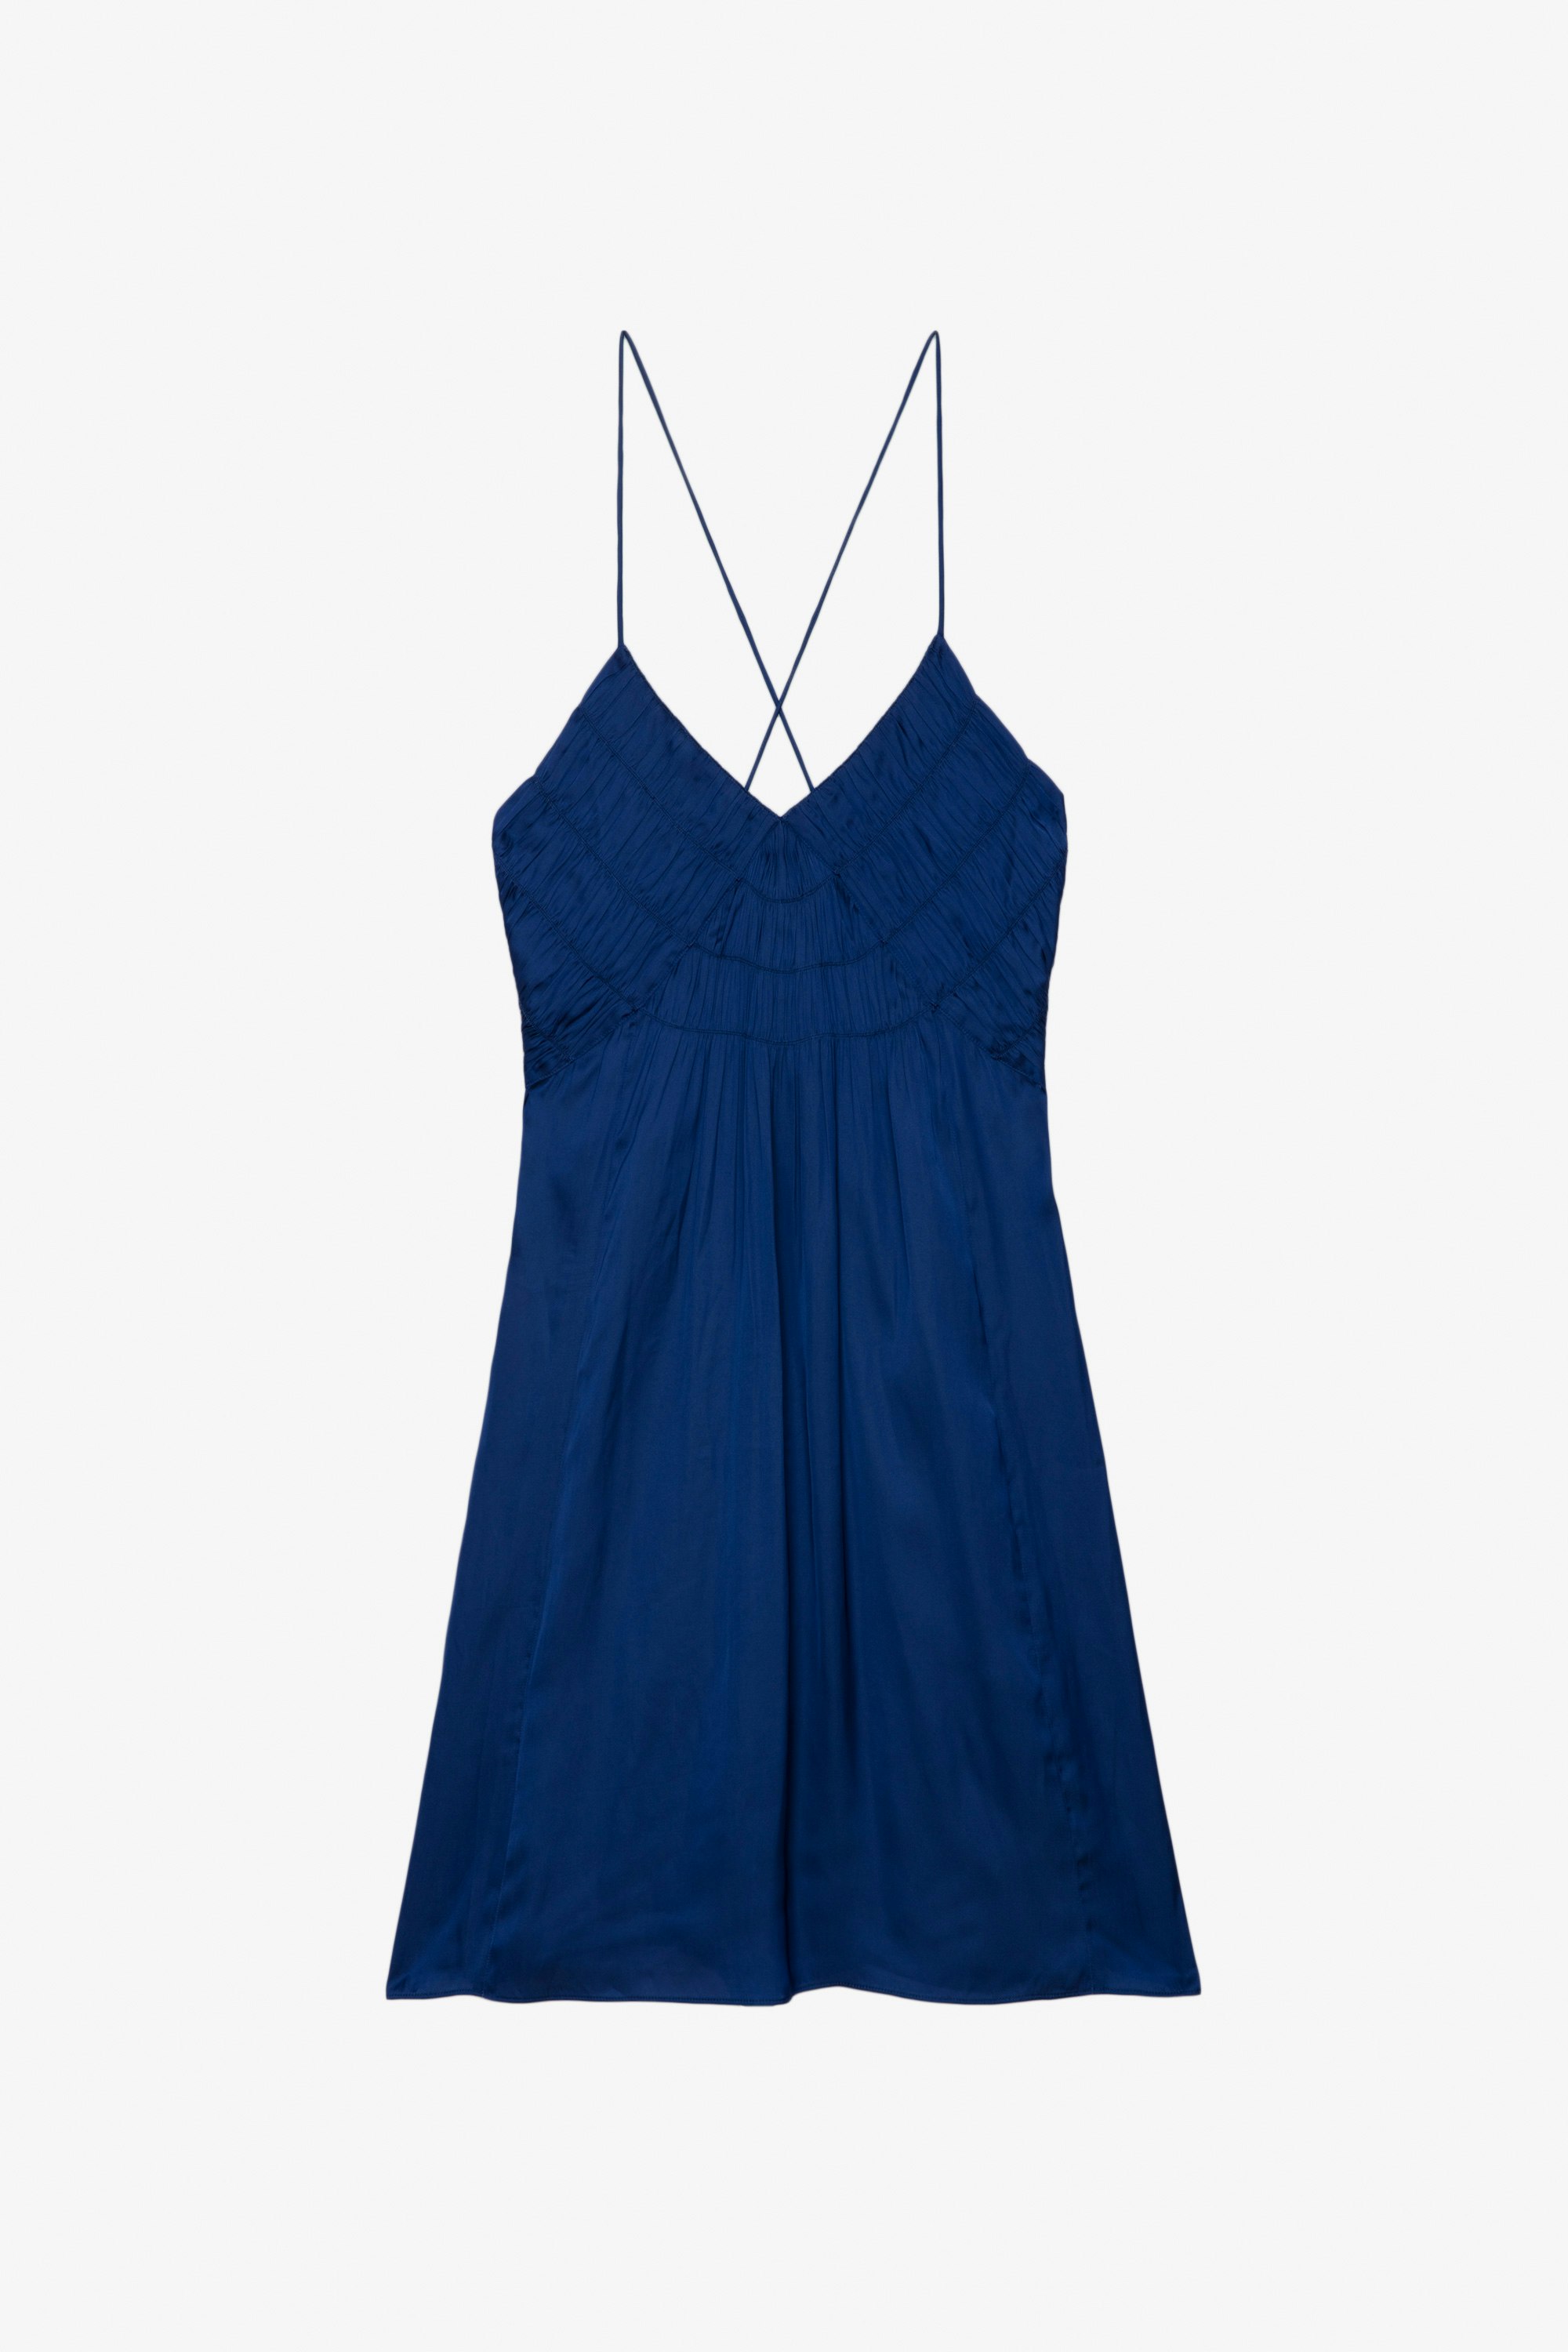 Kleid Rayonna Satin - Kurzes, blaues Satinkleid im Lingerie-Stil mit Trägern und ausgearbeiteter Vorderseite.